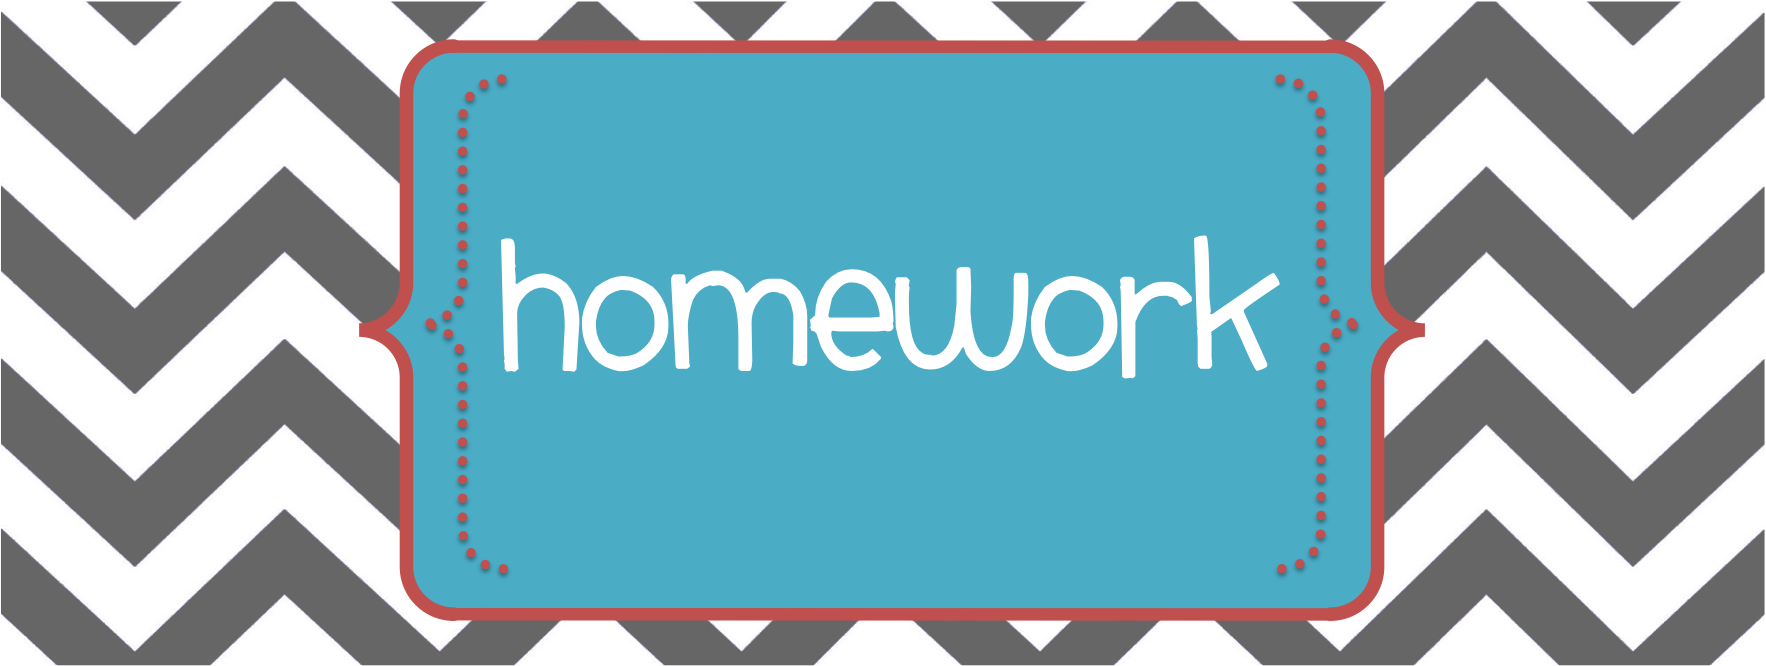 5th Grade Homework | Mrs. Thomas' Virtual Classroom